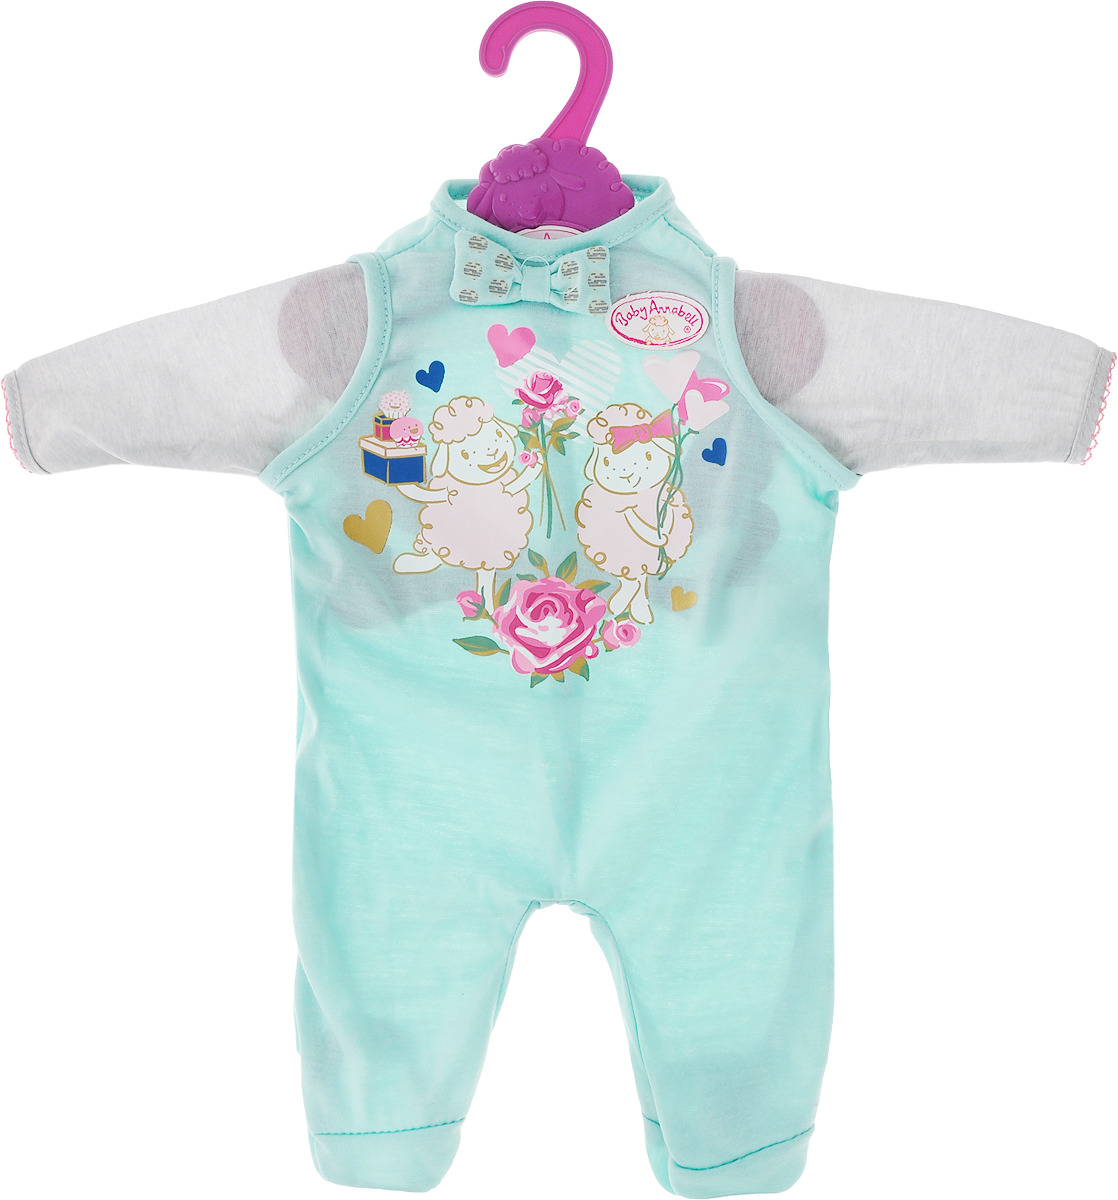 Zapf Creation Одежда для куклы Baby Annabell 700-846